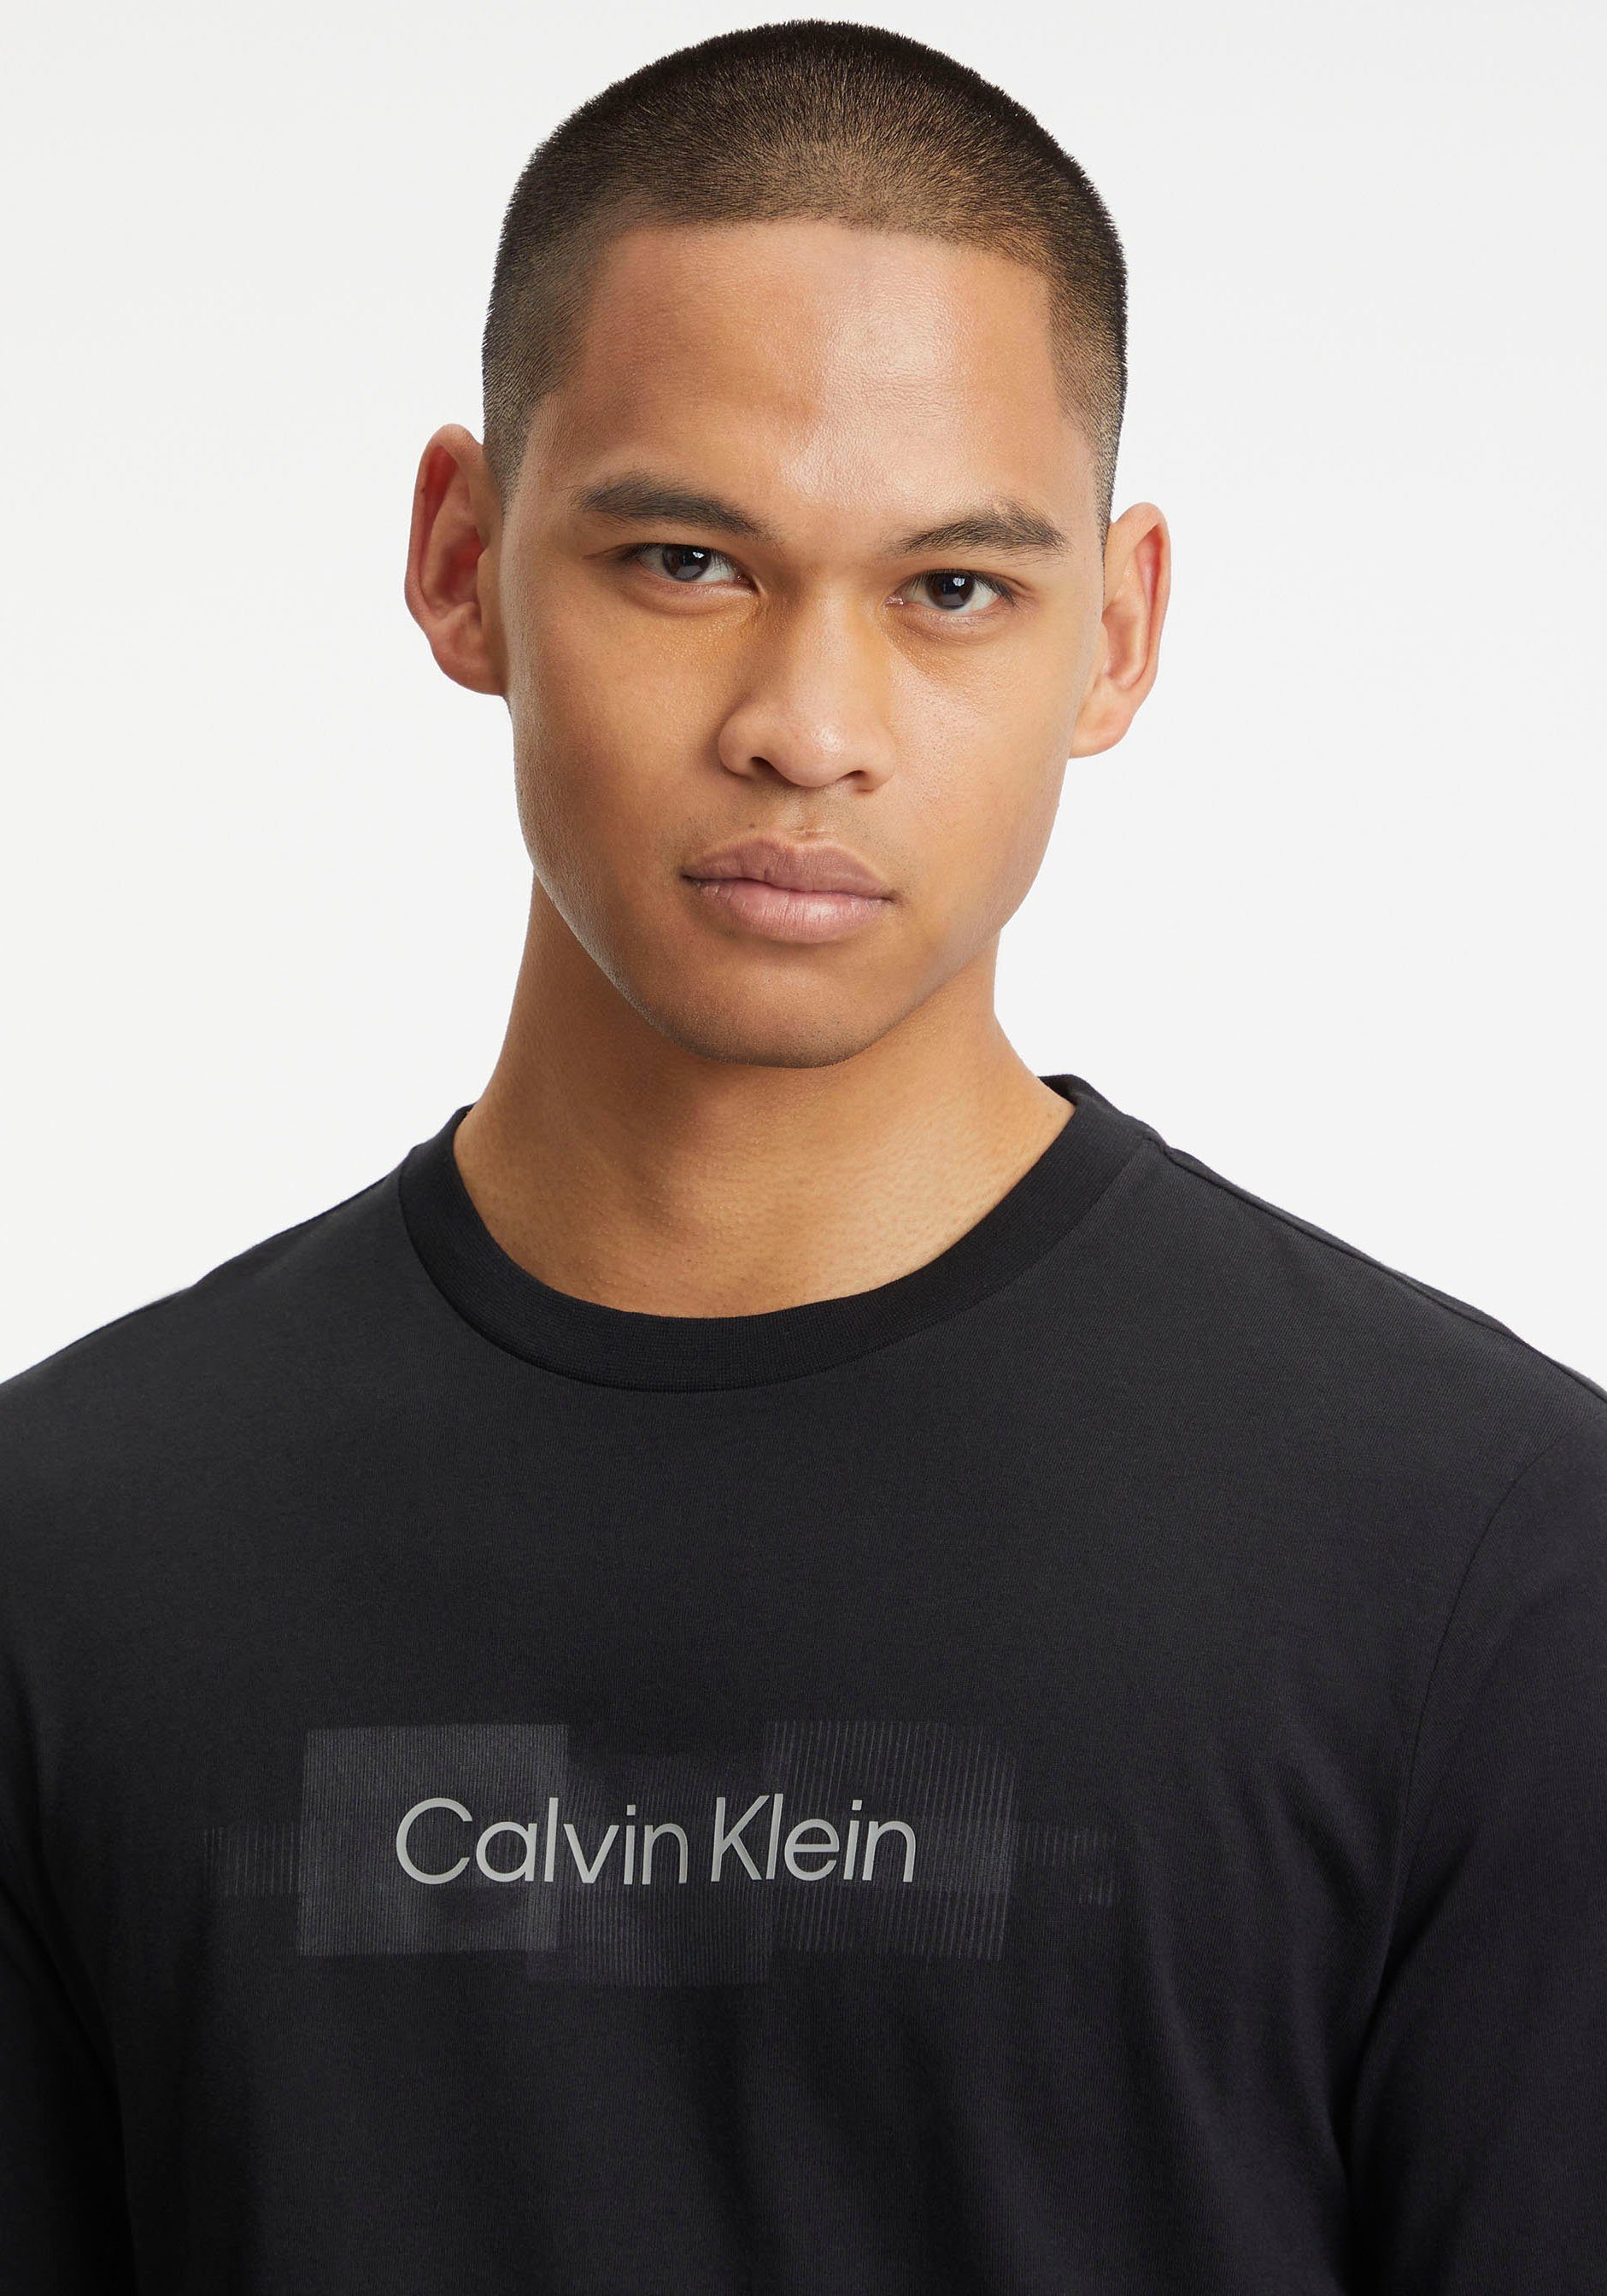 Ck BOX T-SHIRT LOGO Black der mit Vorderseite Logoprint auf Klein LS Longsleeve STRIPED Calvin